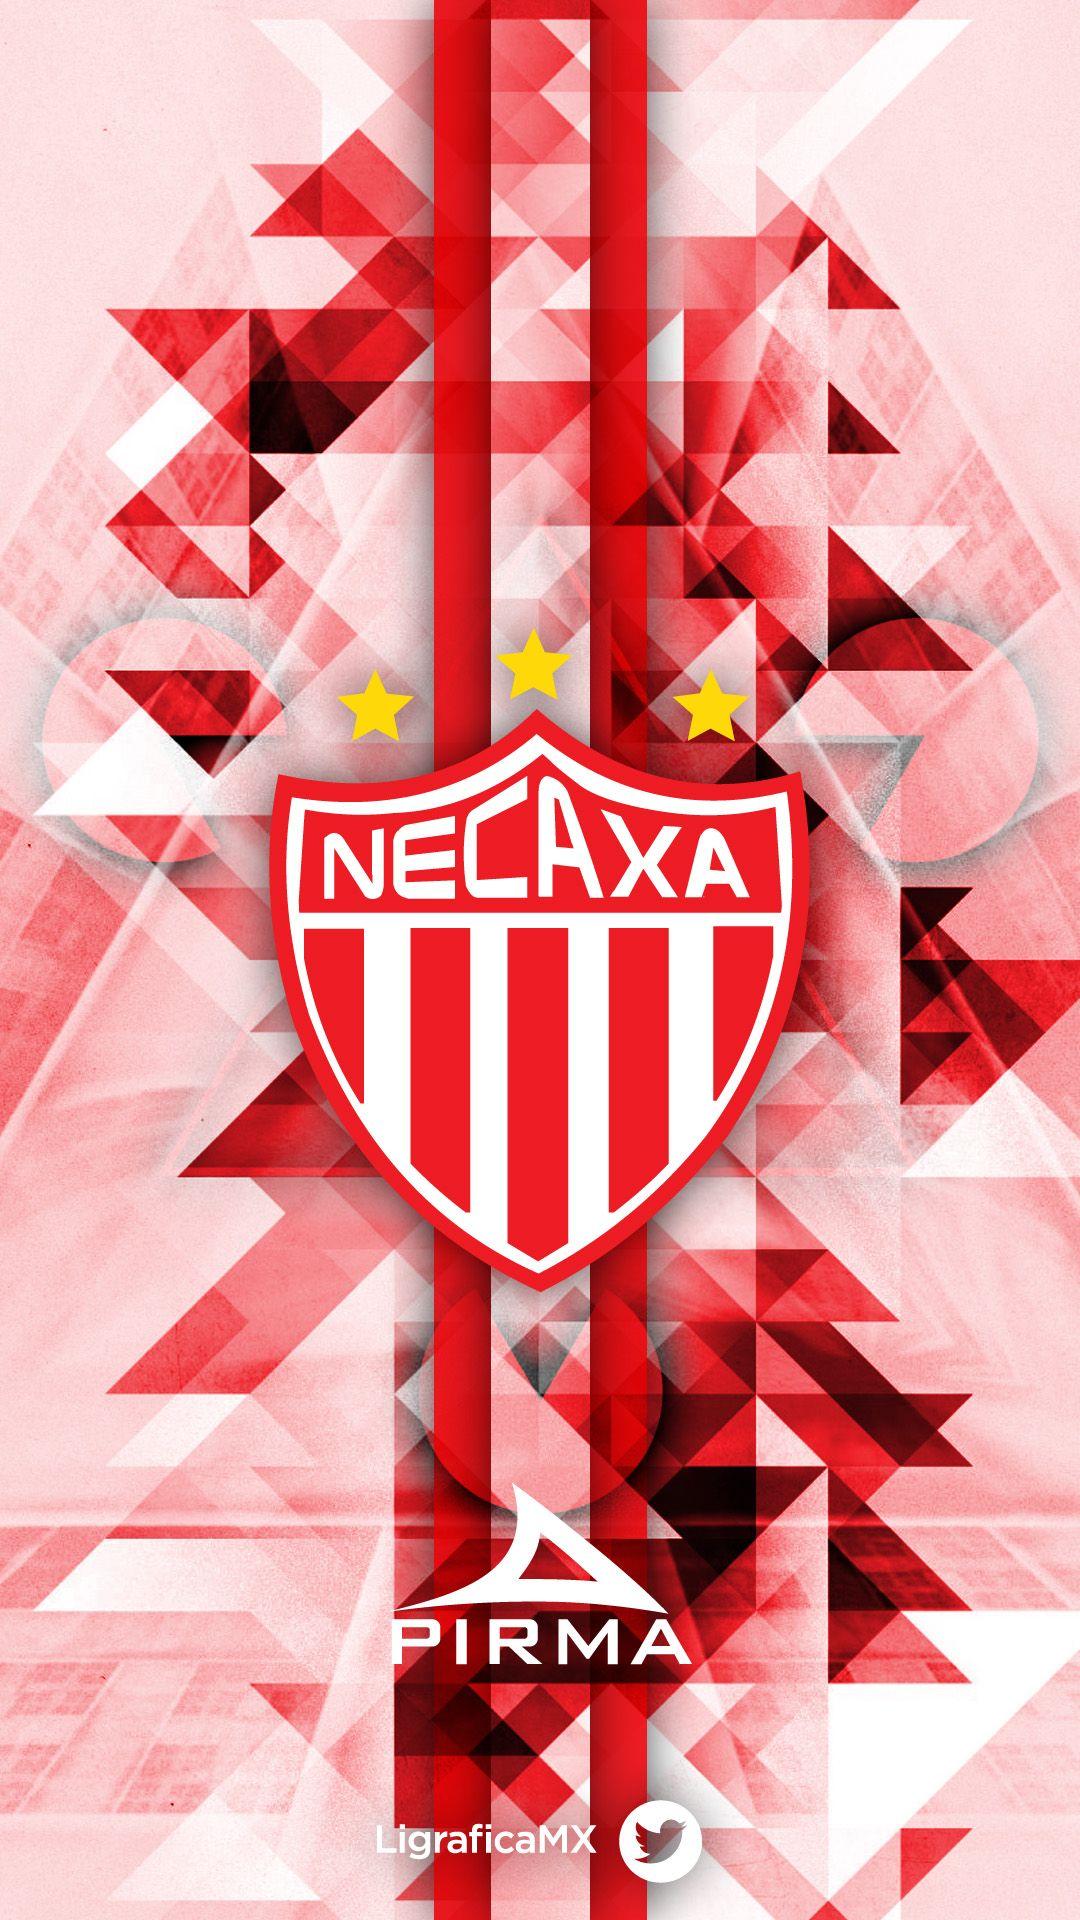 Club Necaxa • LigraficaMX 280314CTG ¡El fútbol nos inspira!. MX